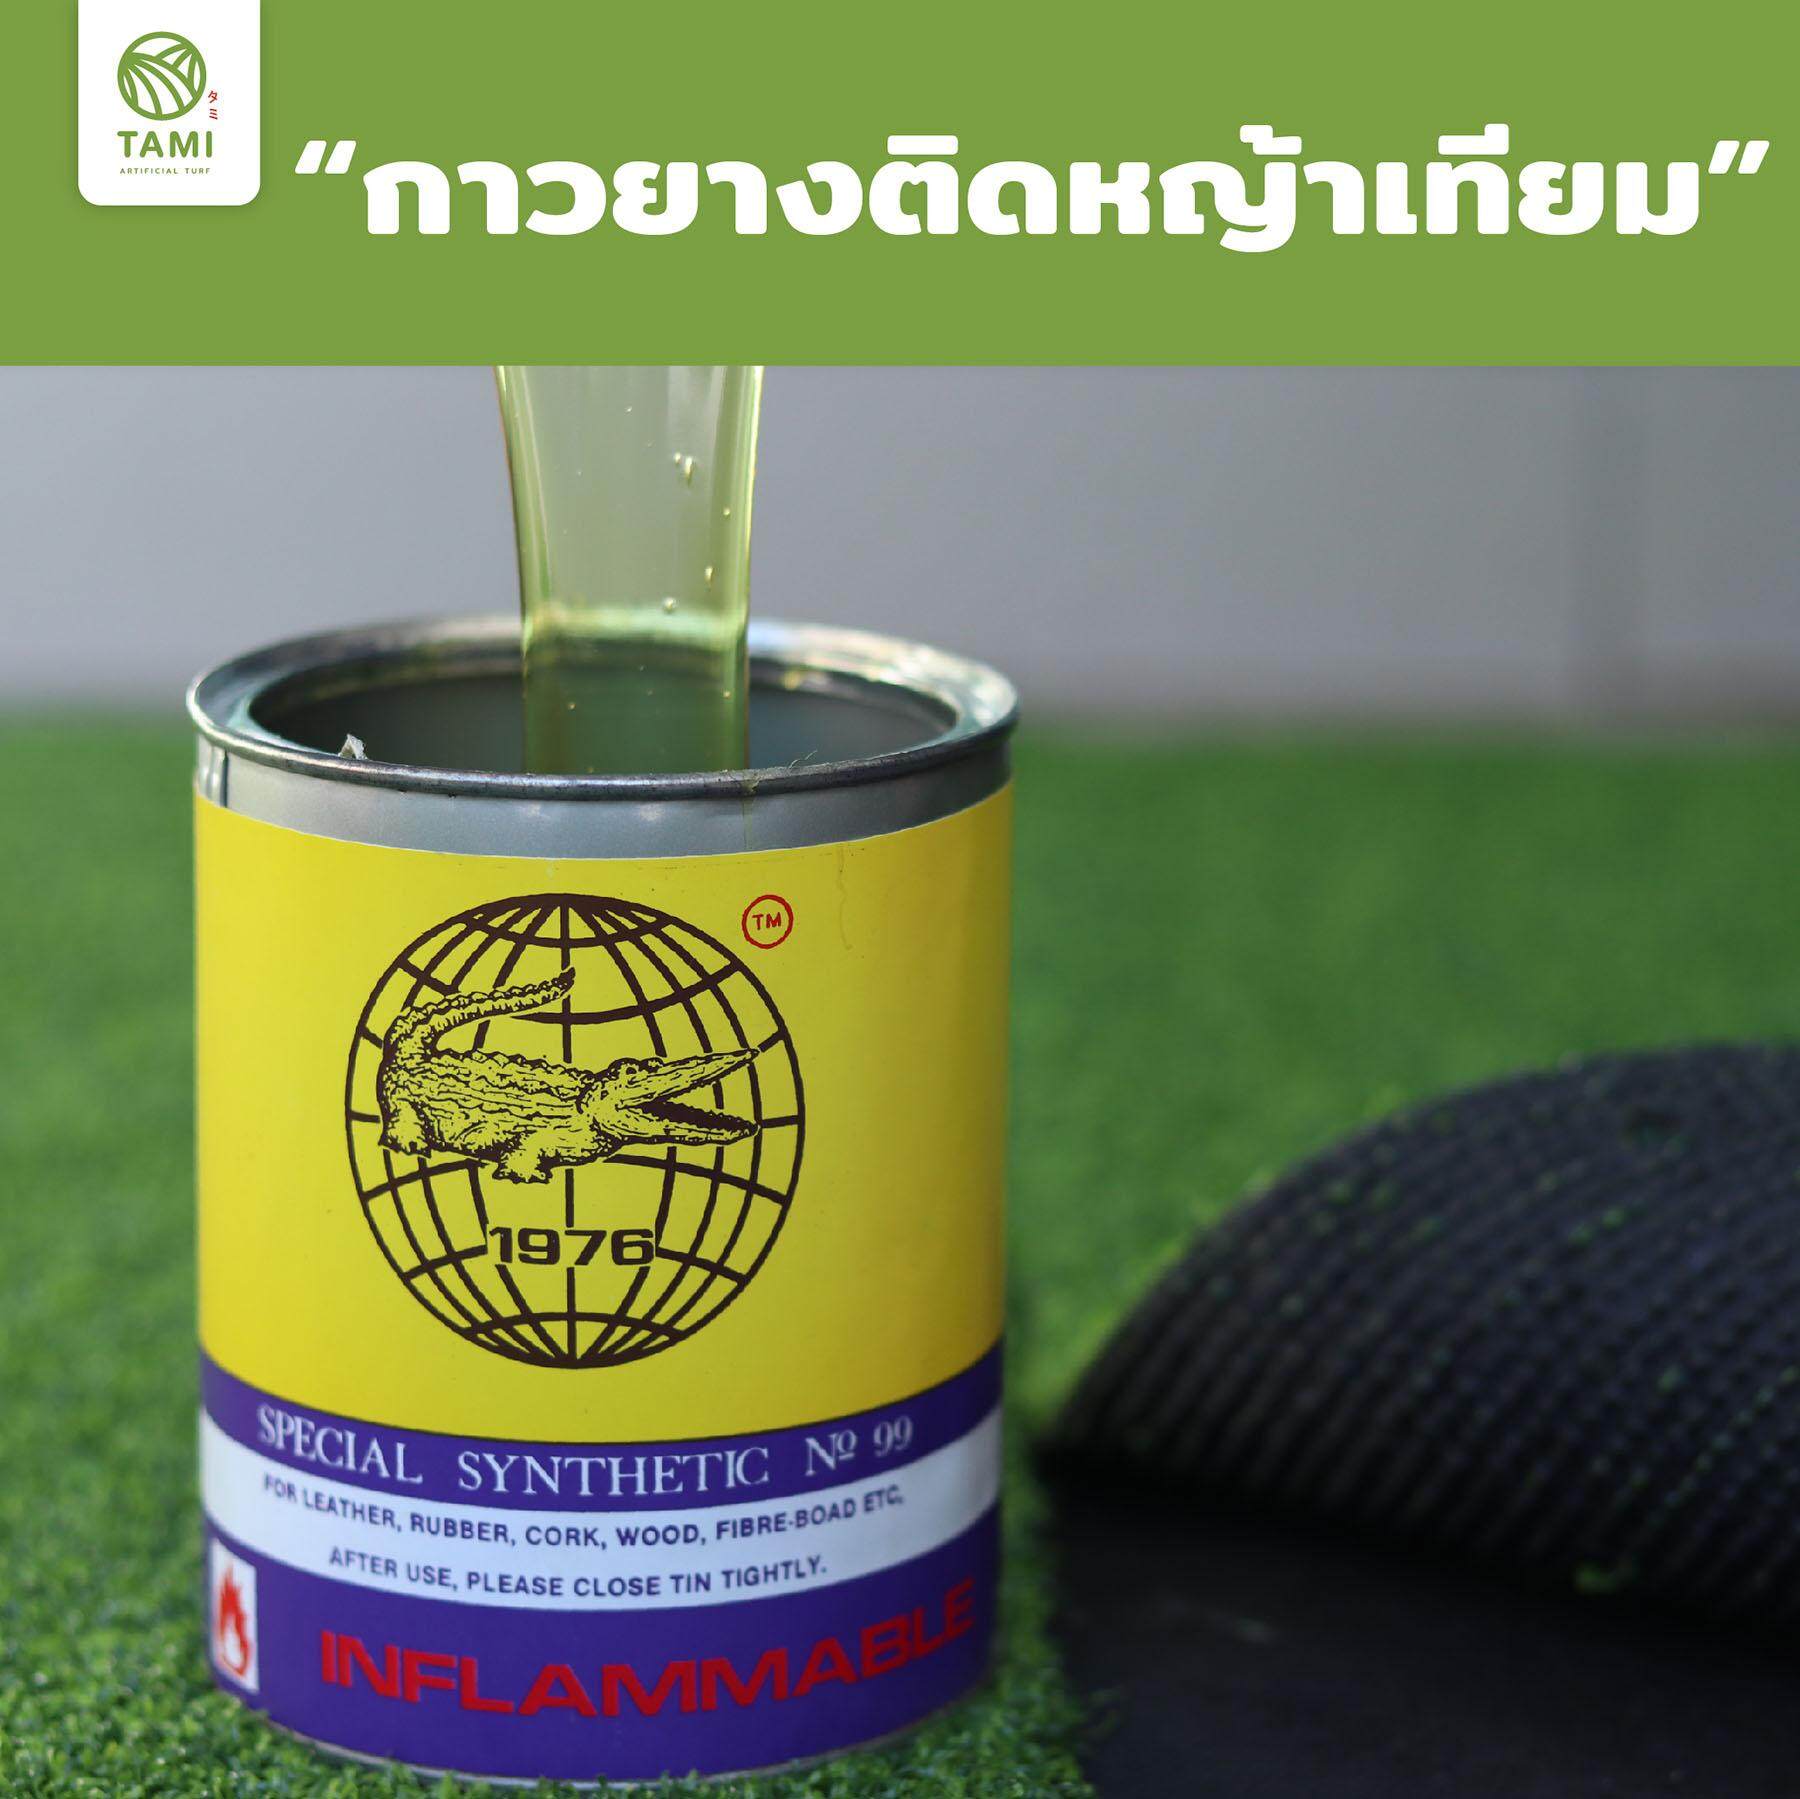 กาวหญ้าเทียม ทามิ กาวติดหญ้าเทียม เชื่อมหญ้าปลอม ตราจระเข้ ถูกๆ ปูพื้น SpecialSyntheticNo.99 Tami ArtificialGrass Seam Adhesive Glue Tami Artificial Turf Seaming Adhesive Glue